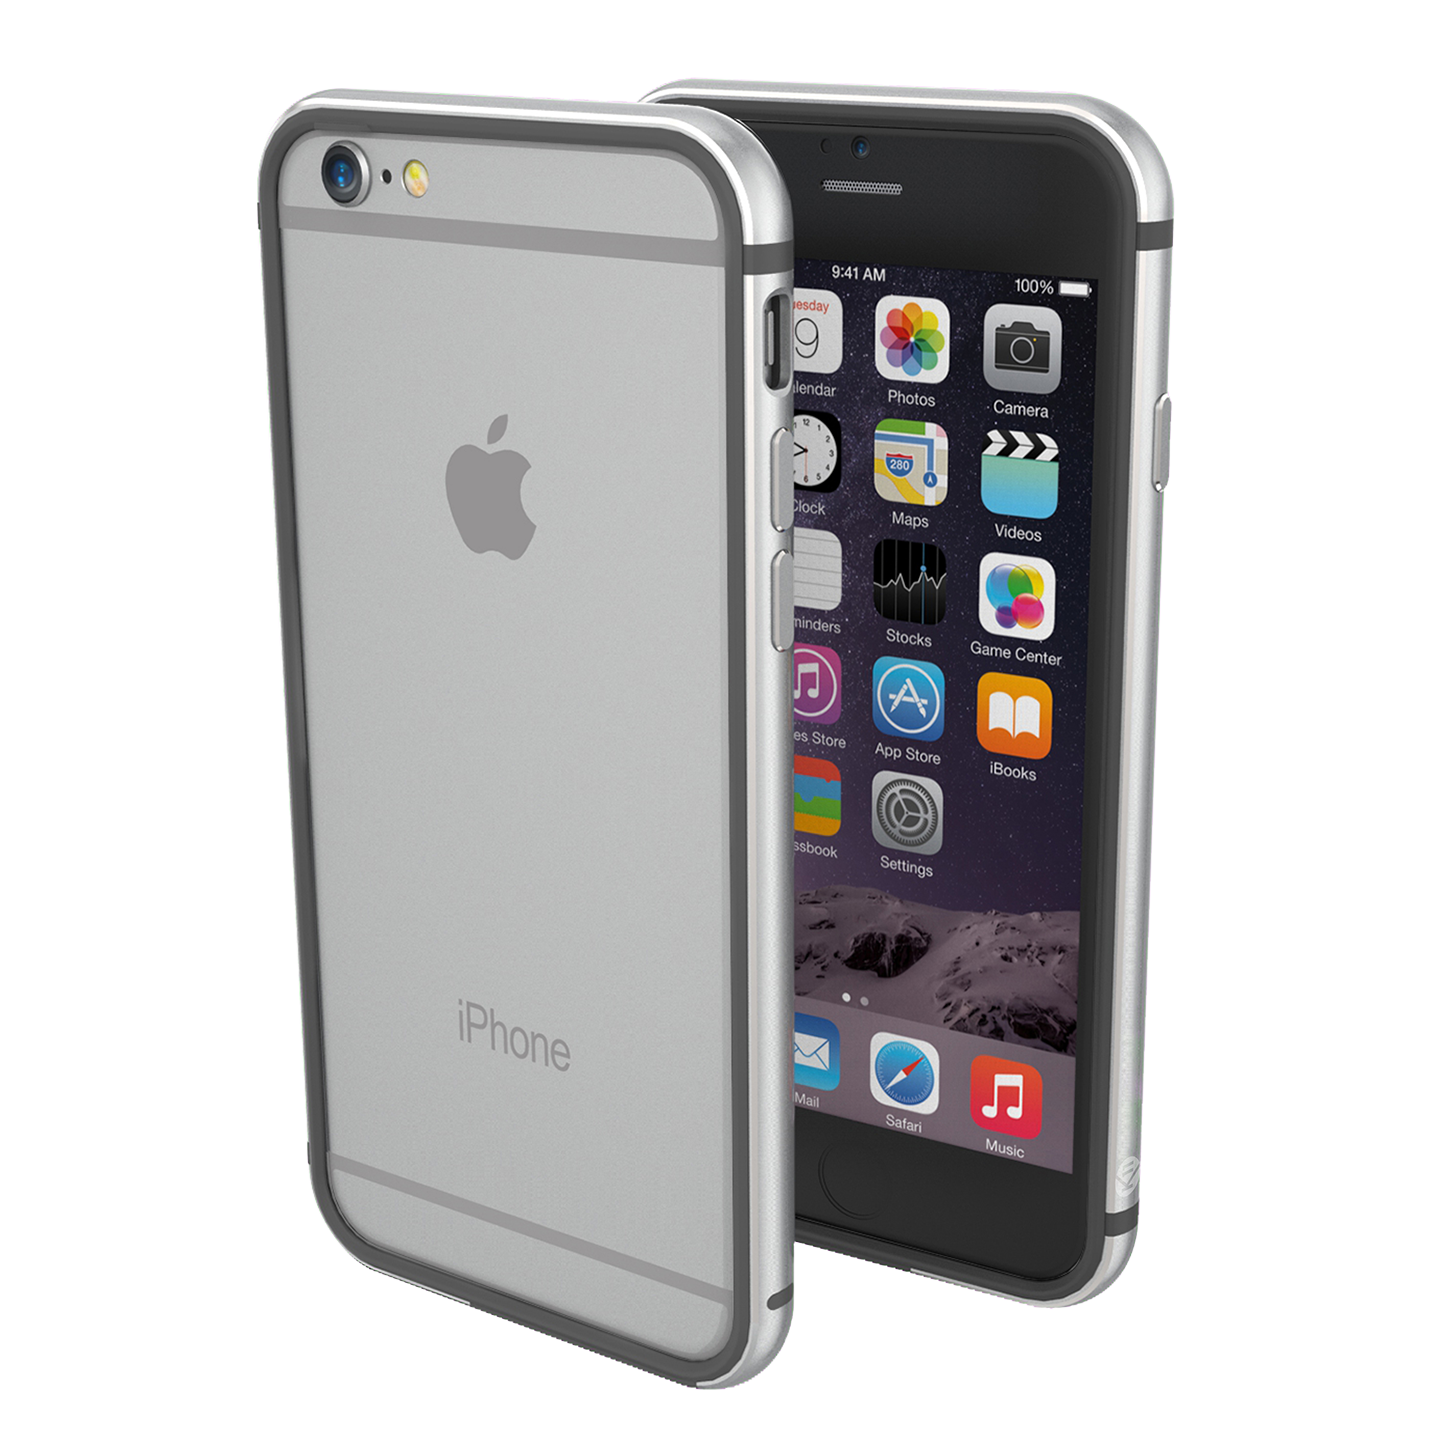 [開箱] iPhone6 太空灰 16G，螢幕加大、相機功能更清晰 (彎曲測試?) – Angus電科技